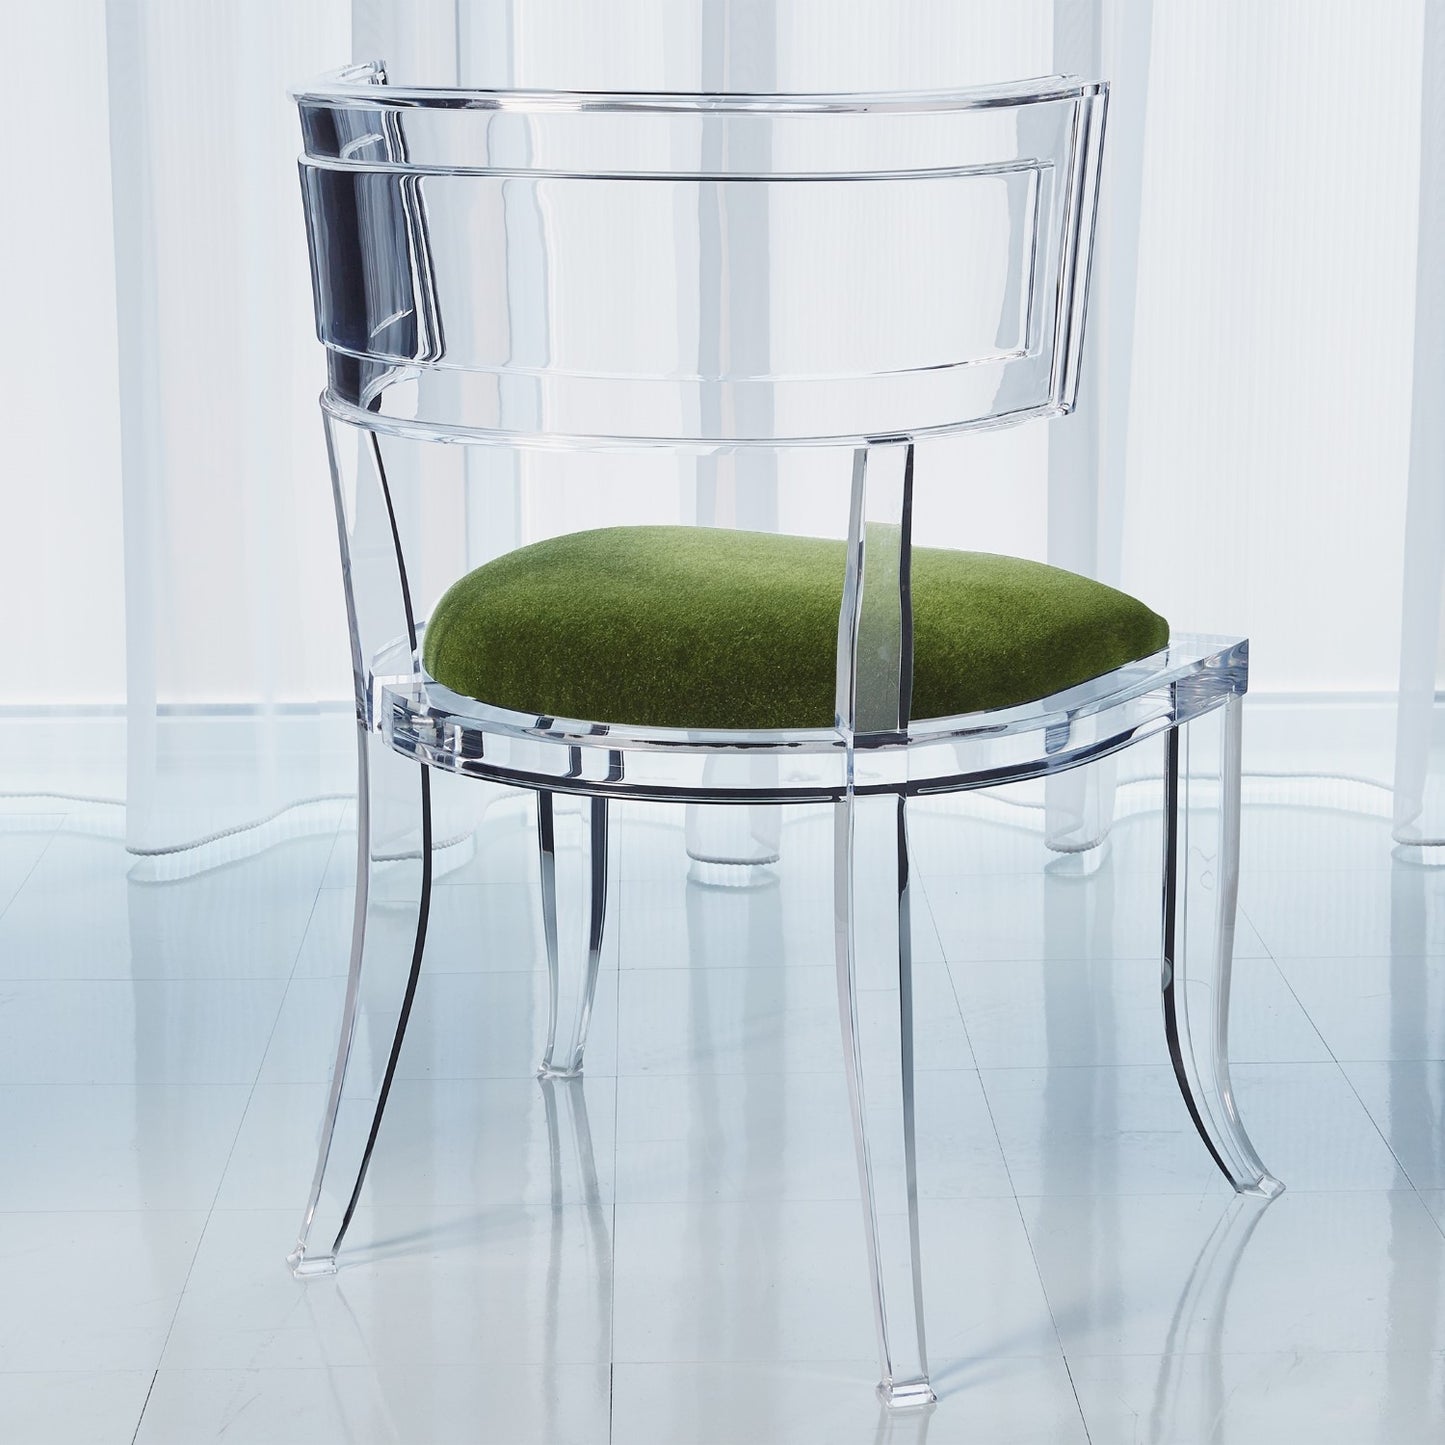 Klismos Acrylic Chair - Emerald Green - Grats Decor Interior Design & Build Inc.